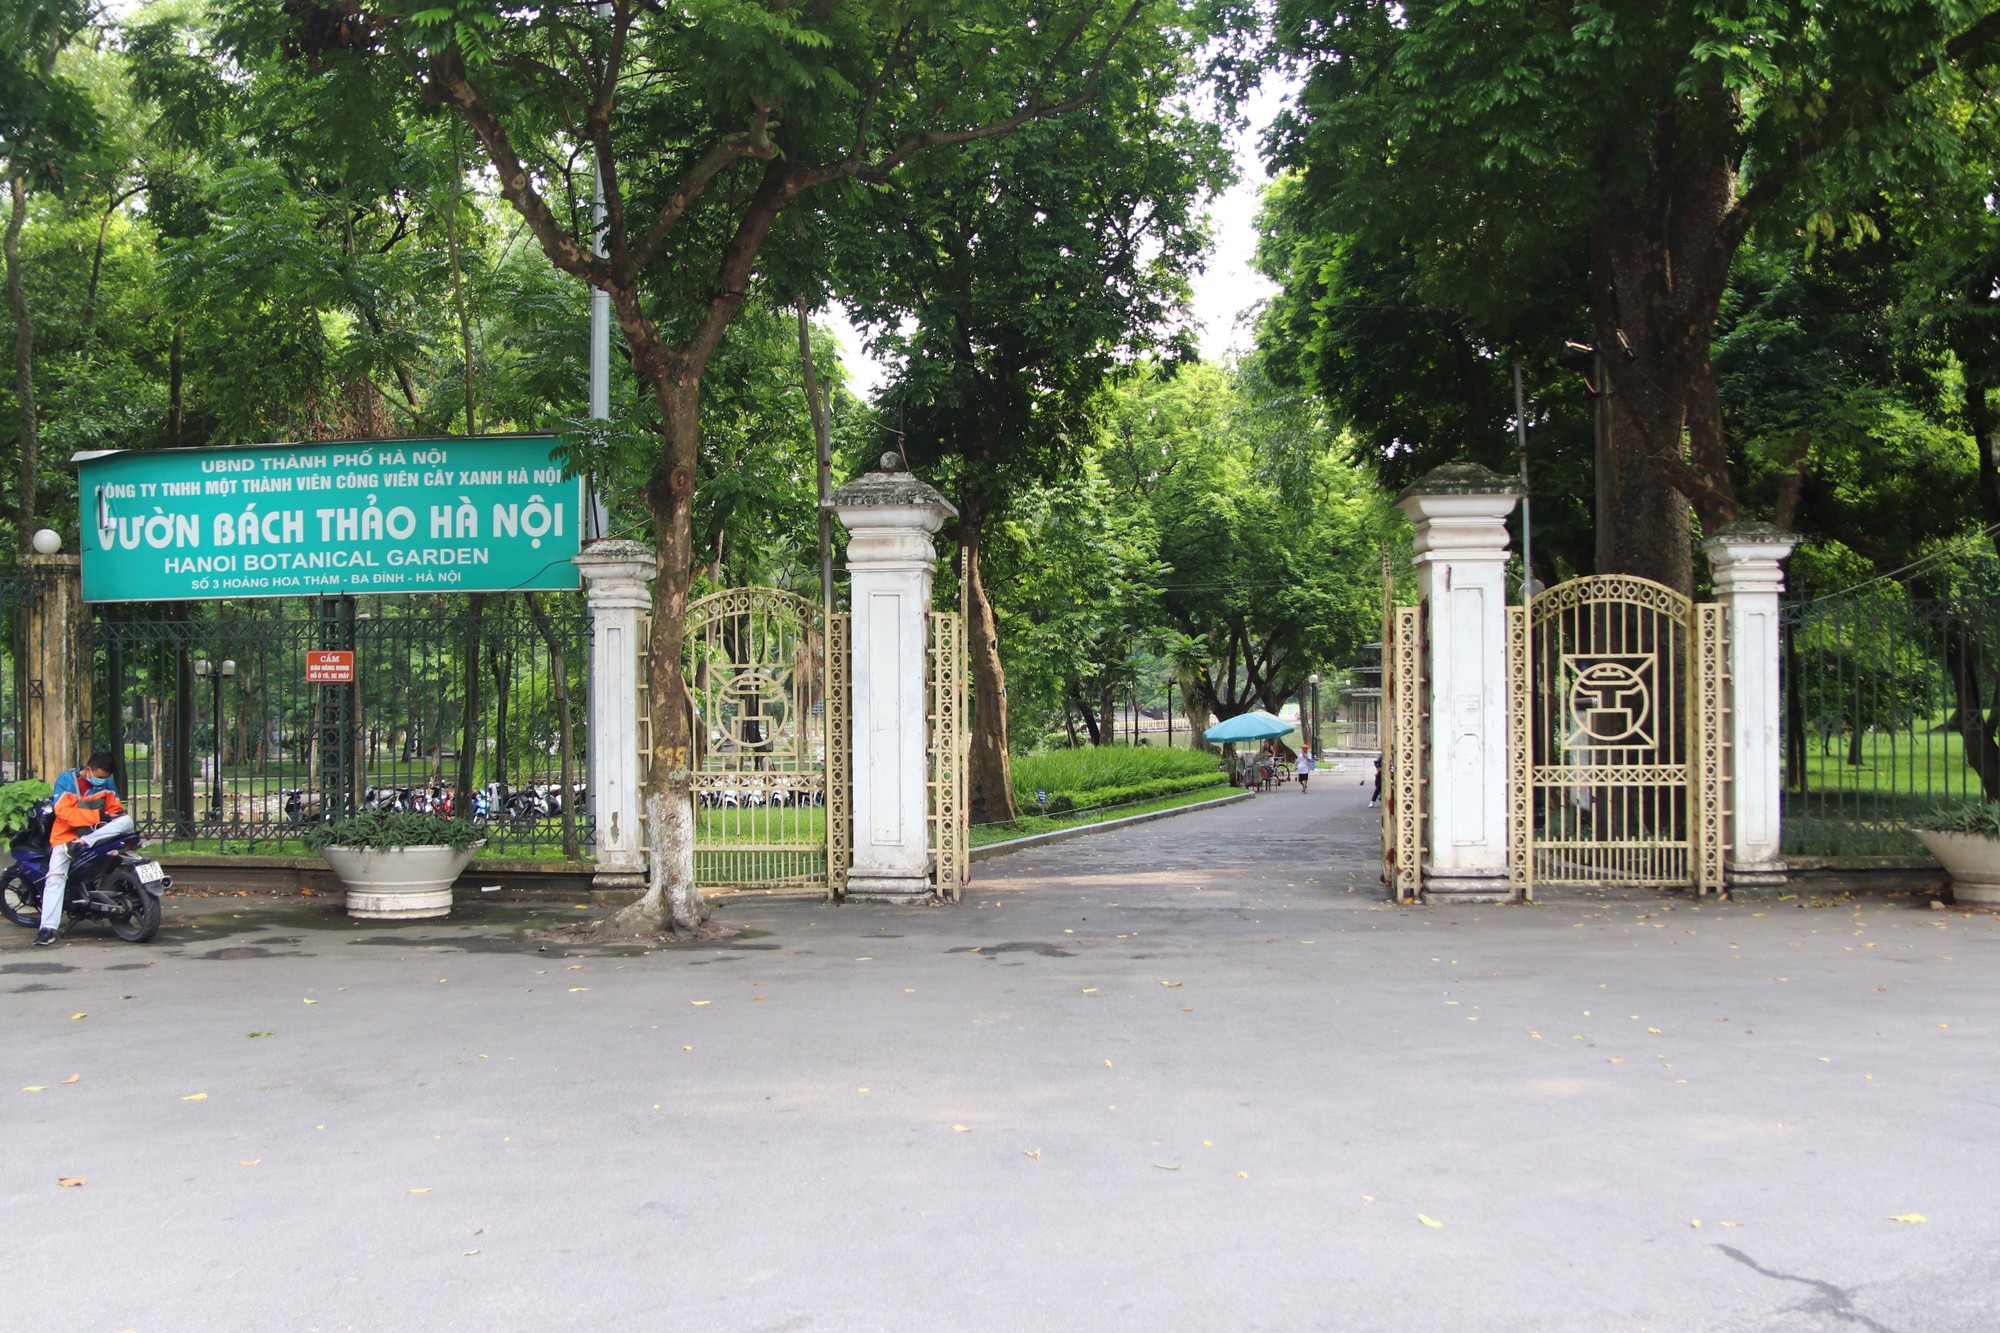 Hiện trạng 3 công viên đã tồn tại hàng chục năm ở Hà Nội sắp được cải tạo, nâng cấp - Ảnh 7.